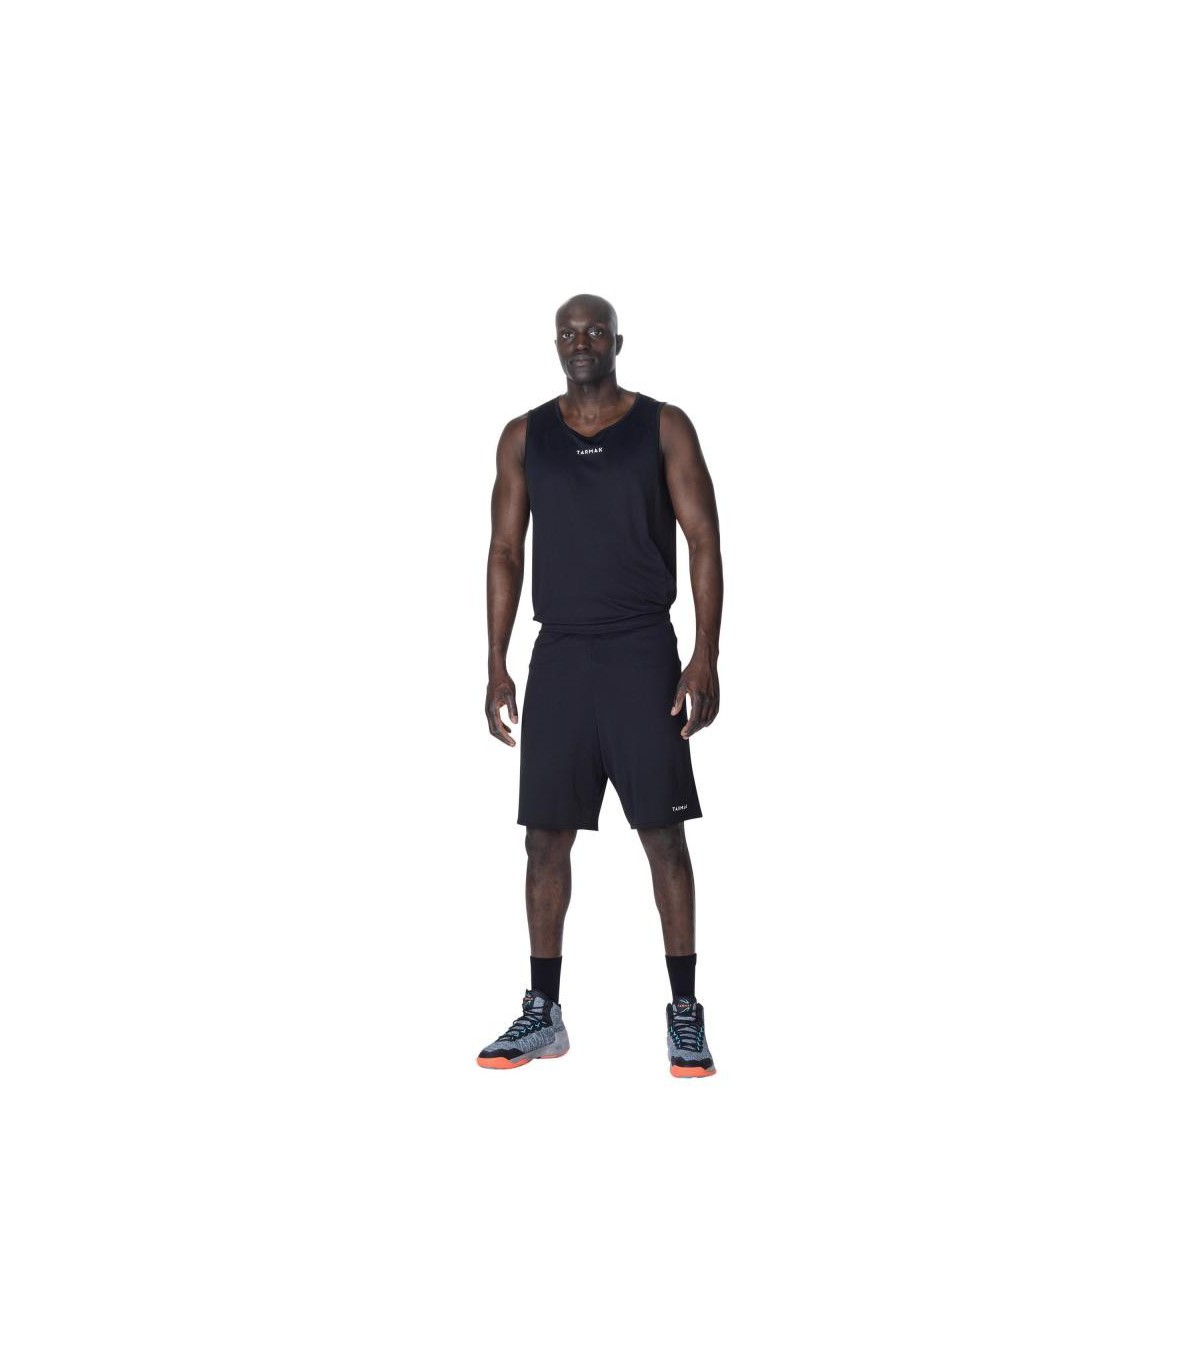 خرید آنلاین شلوارک های ورزشی مردانه برند دکتلون مخصوص بسکتبال